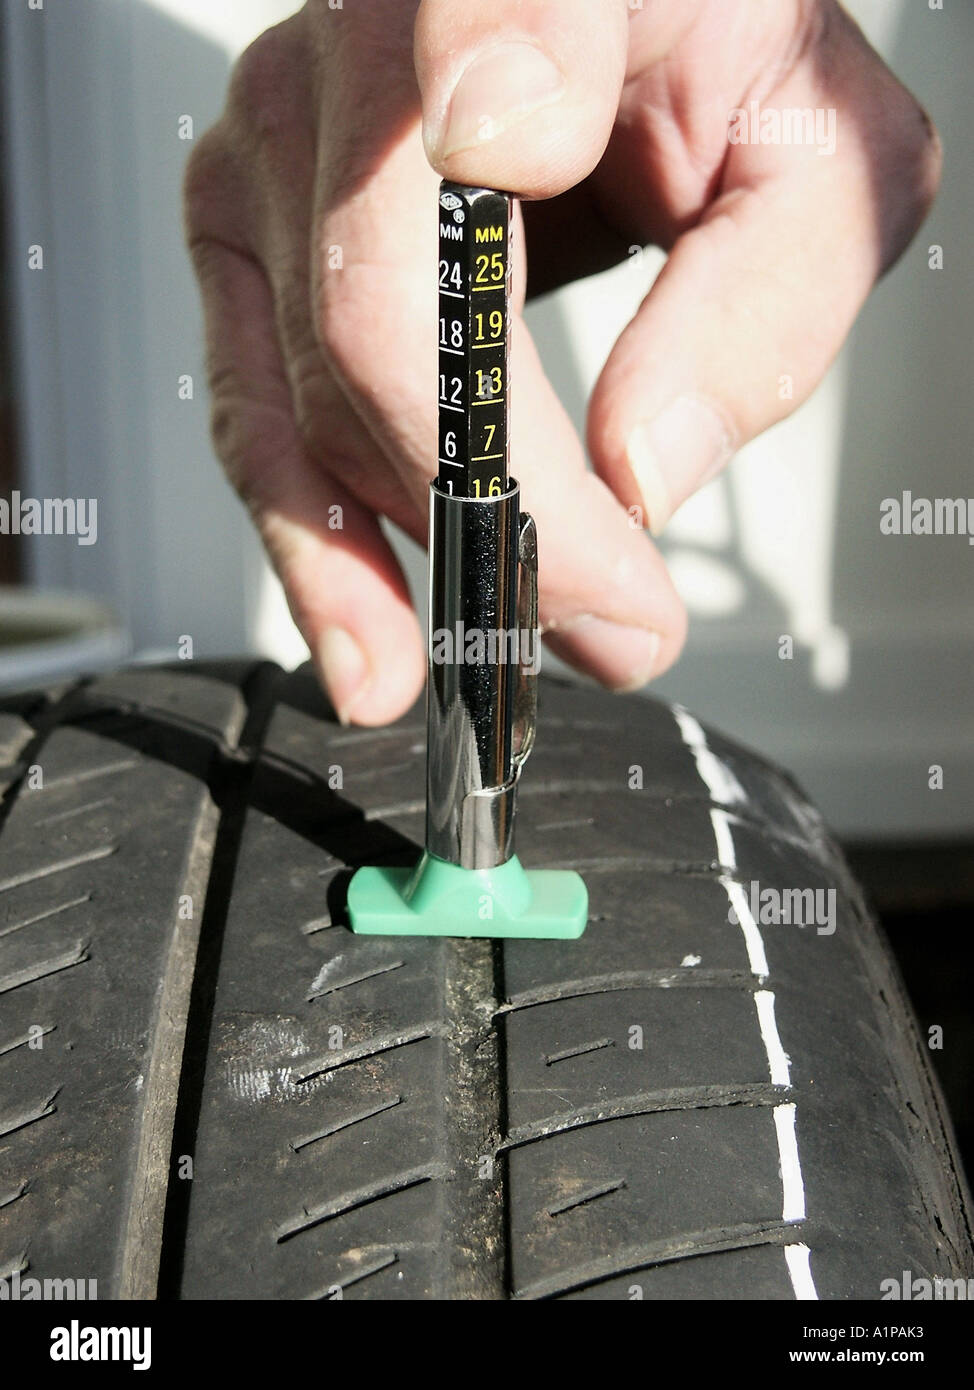 Jauge de profondeur de bande de roulement à code couleur Insma-x Jauge de  profondeur de bande de roulement identifie l’usure des pneus